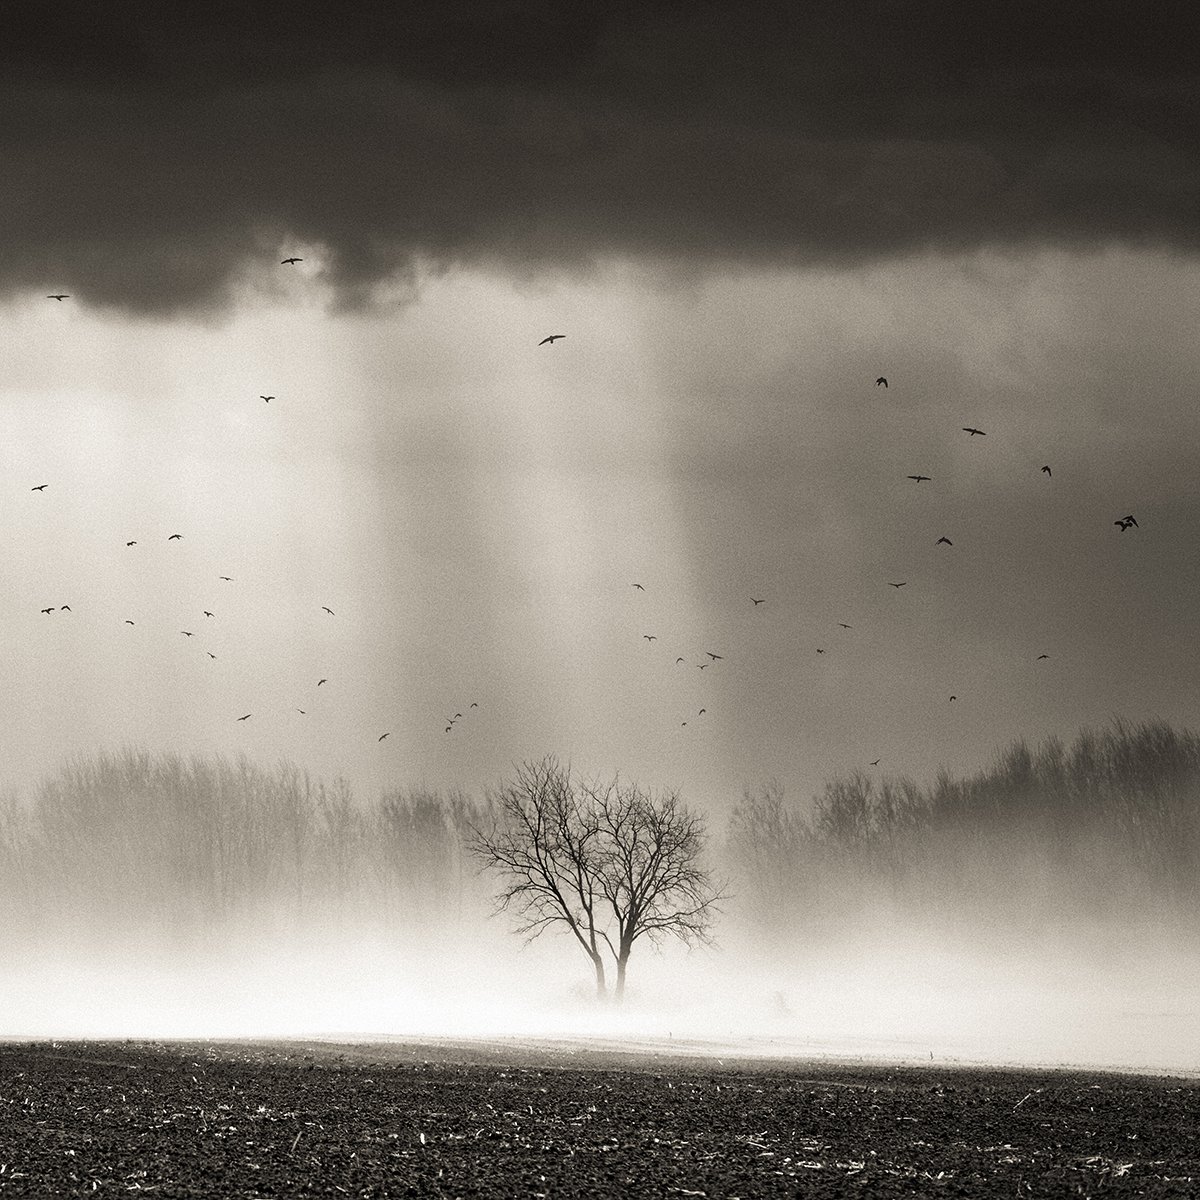 Dust storm by Peter Zelei